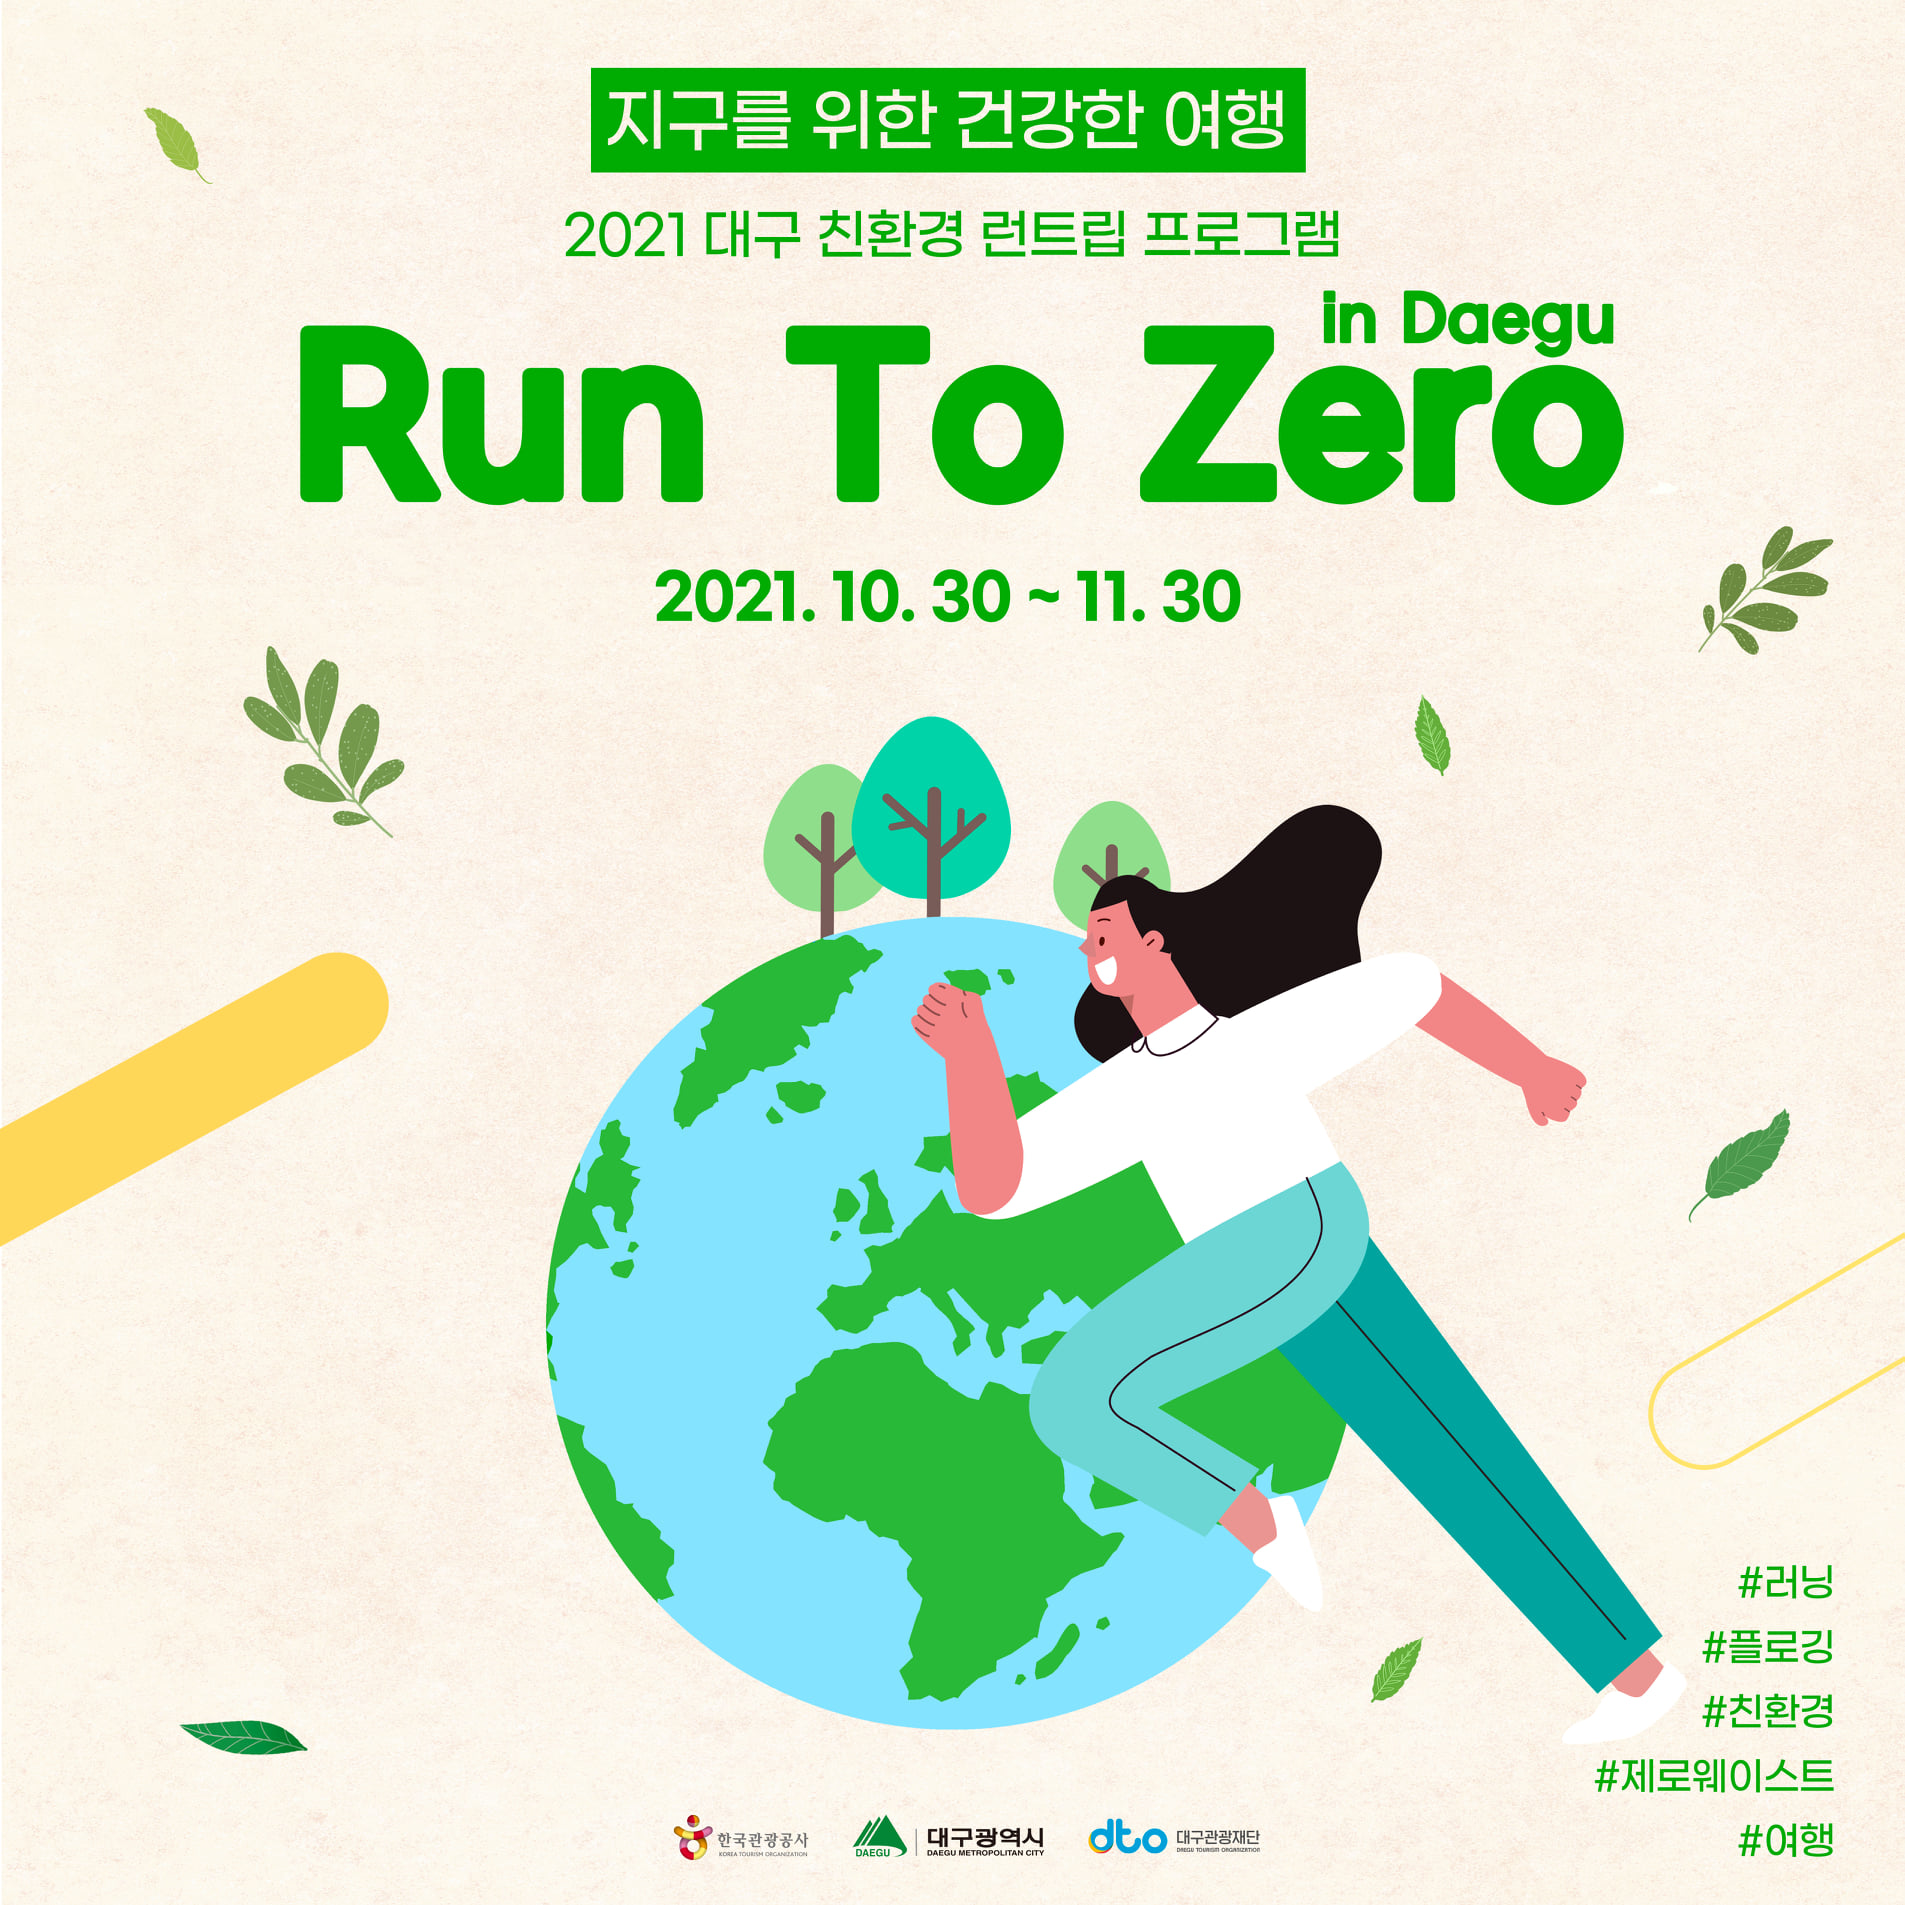 2021-RunToZero In Daegu